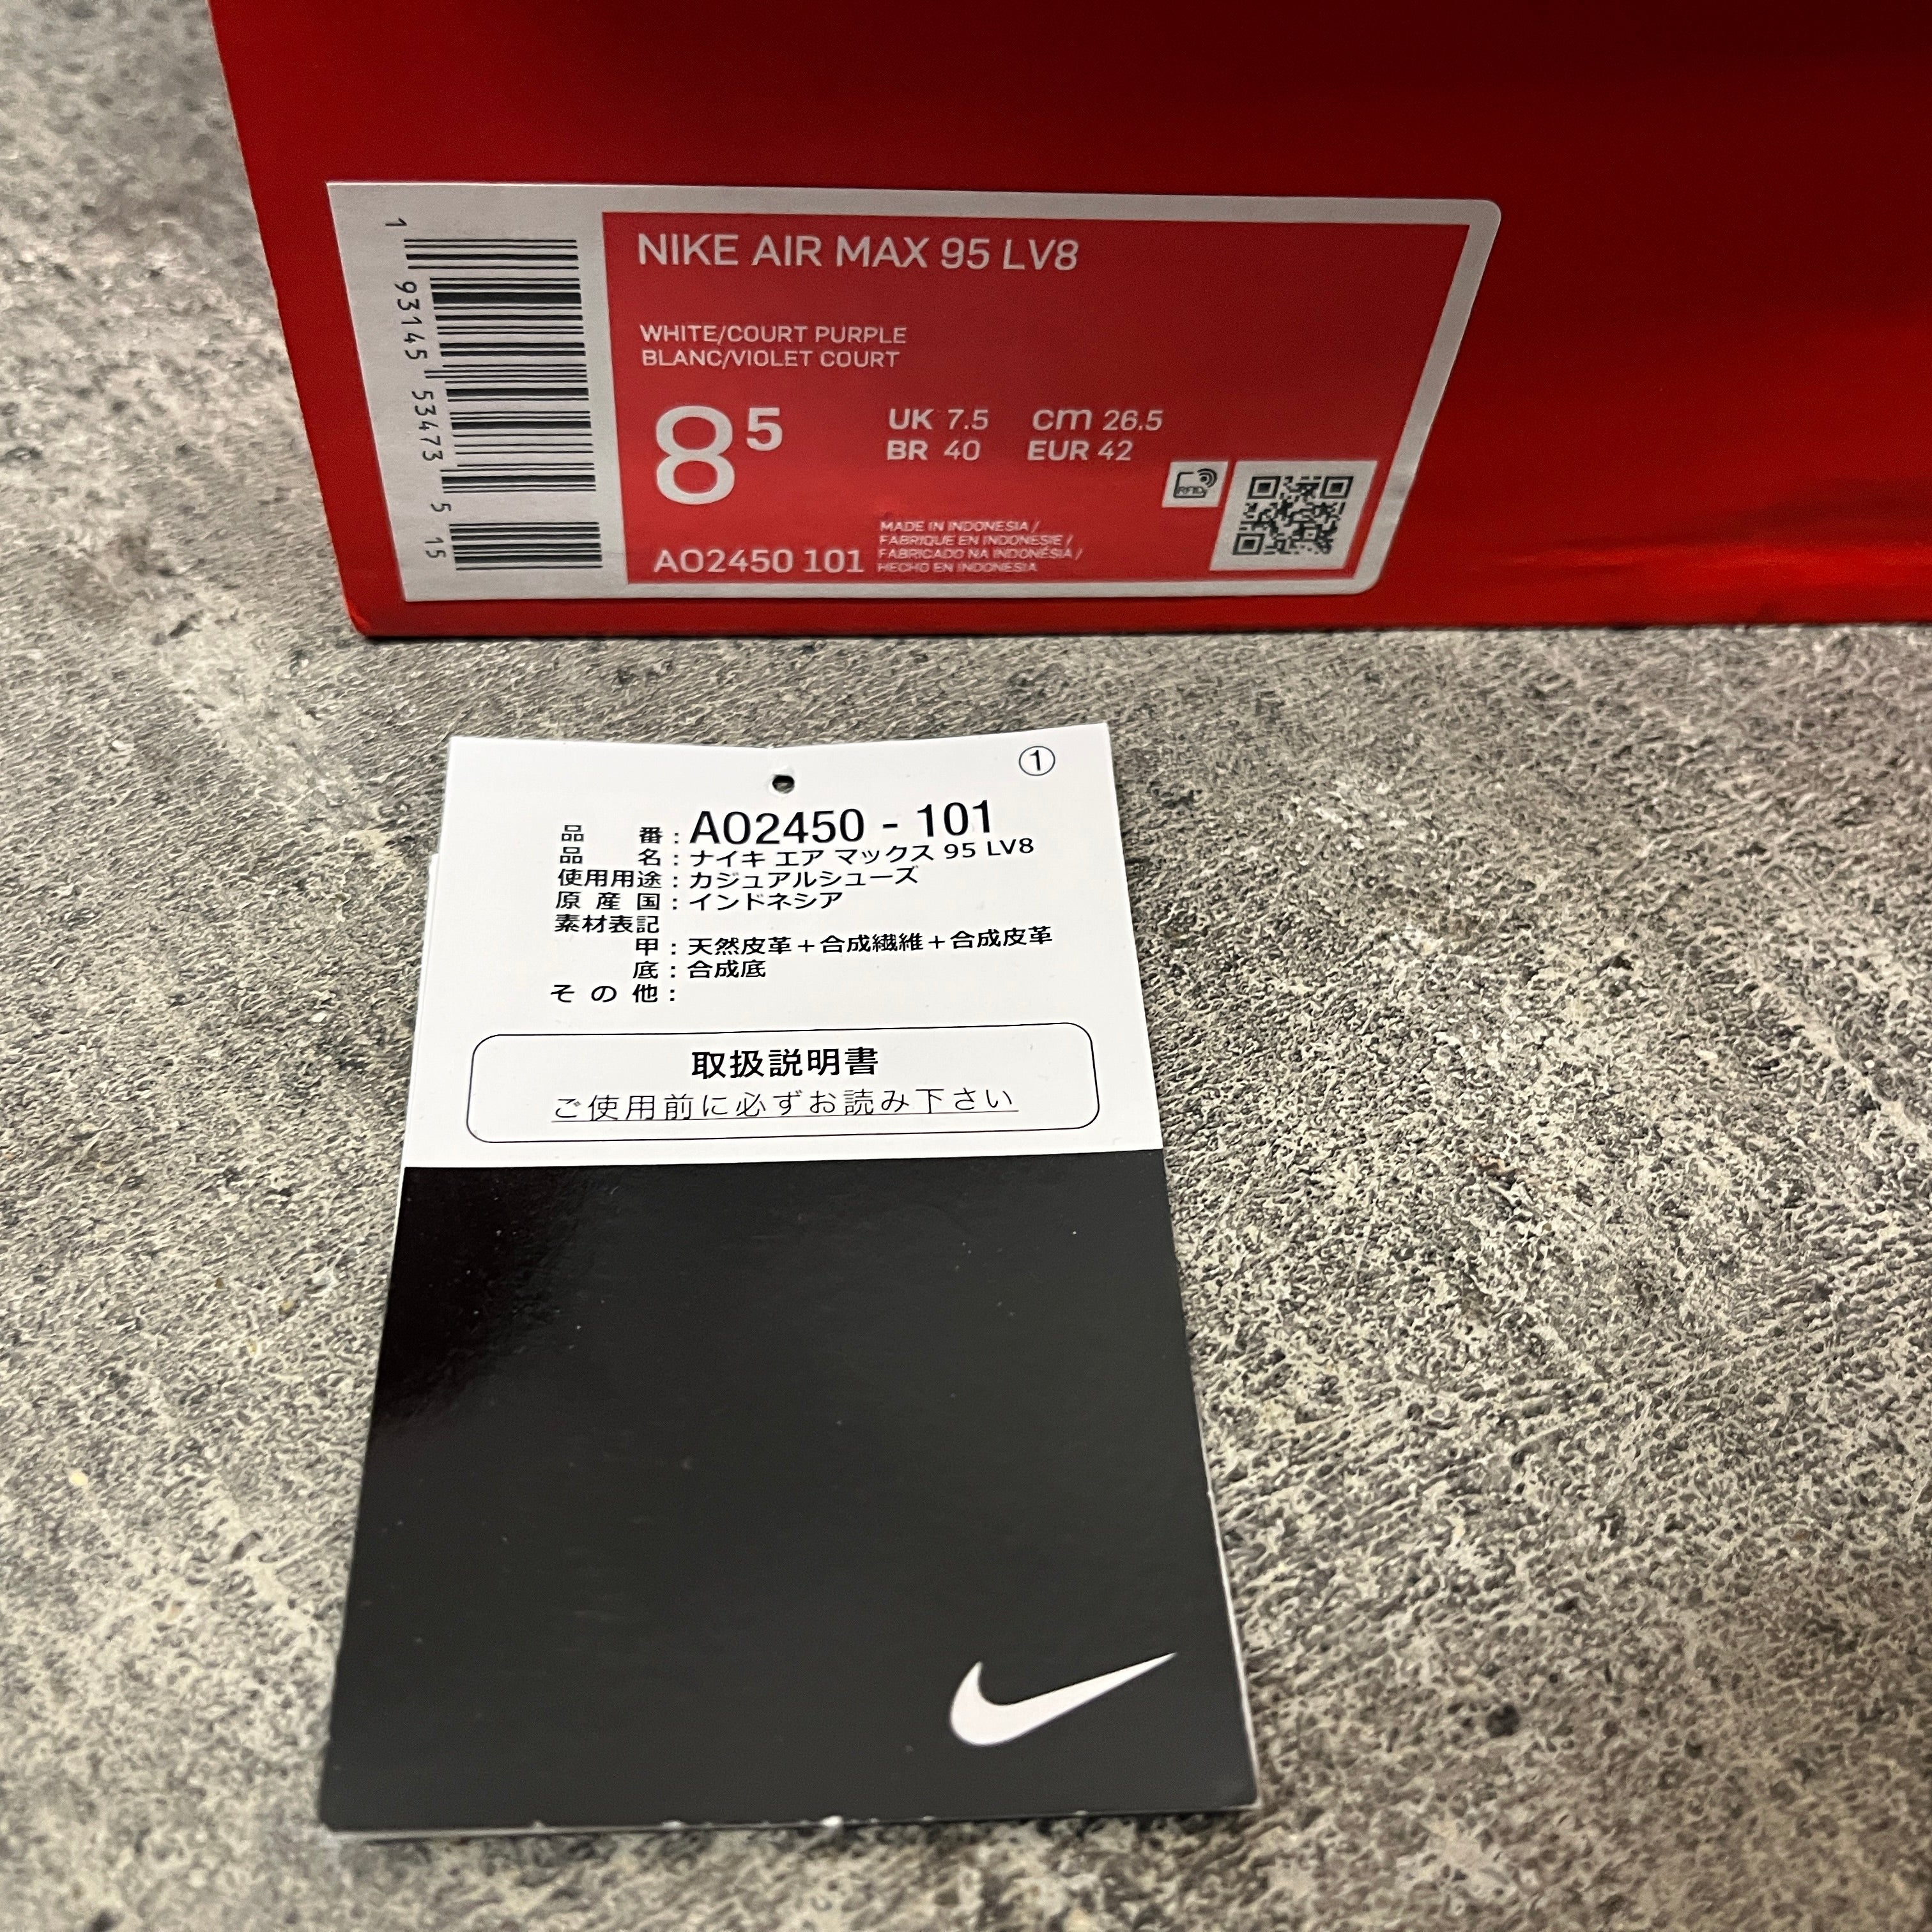 Nike Air Max 95 LV8, AO2450-101